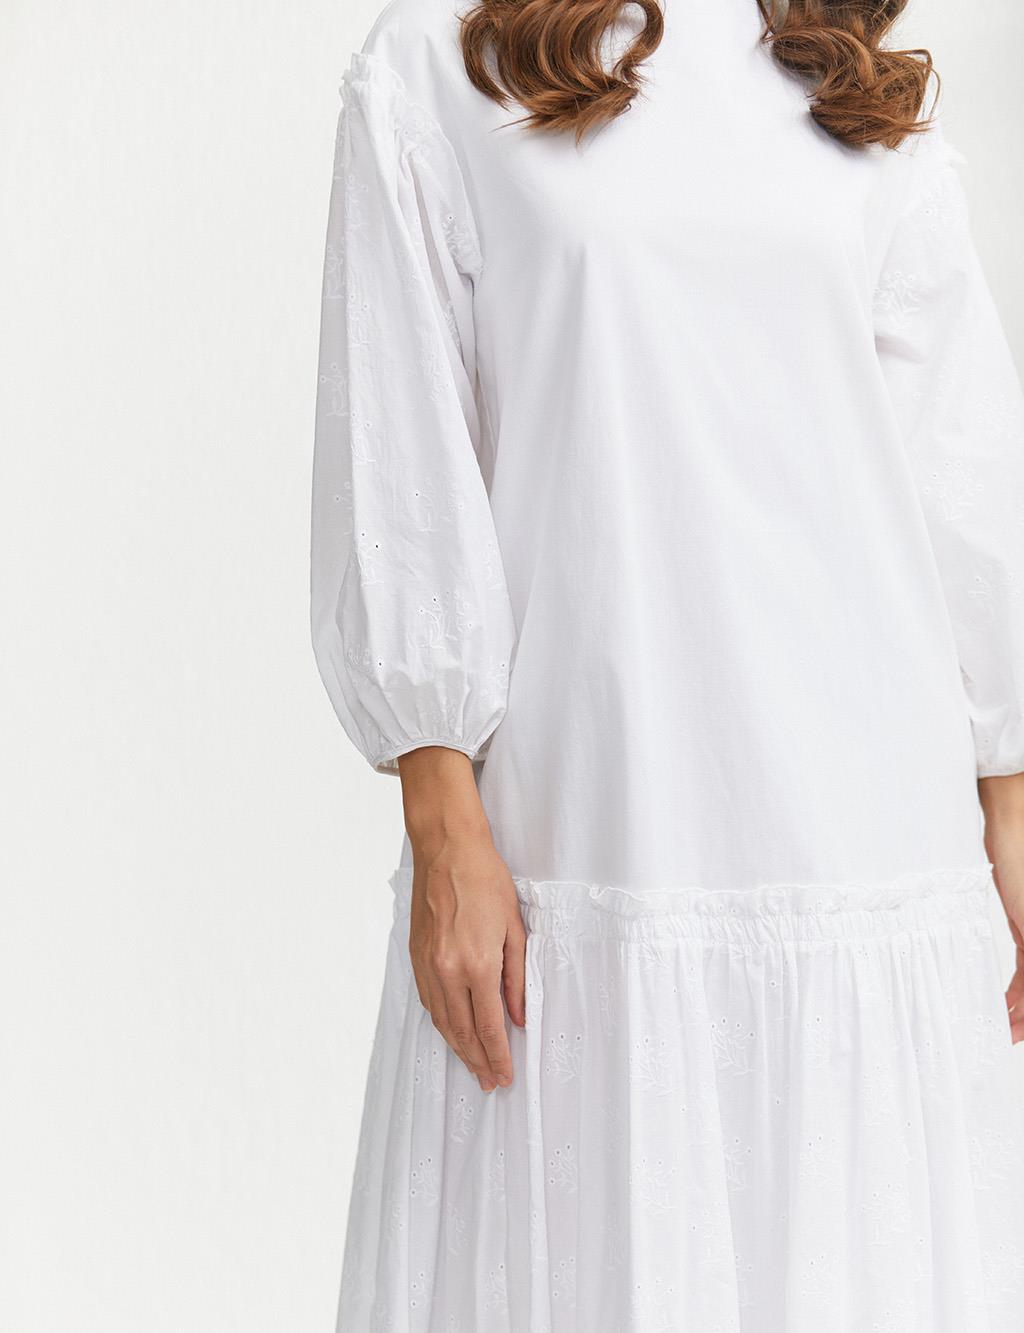 Scalloped Full Length Dress White